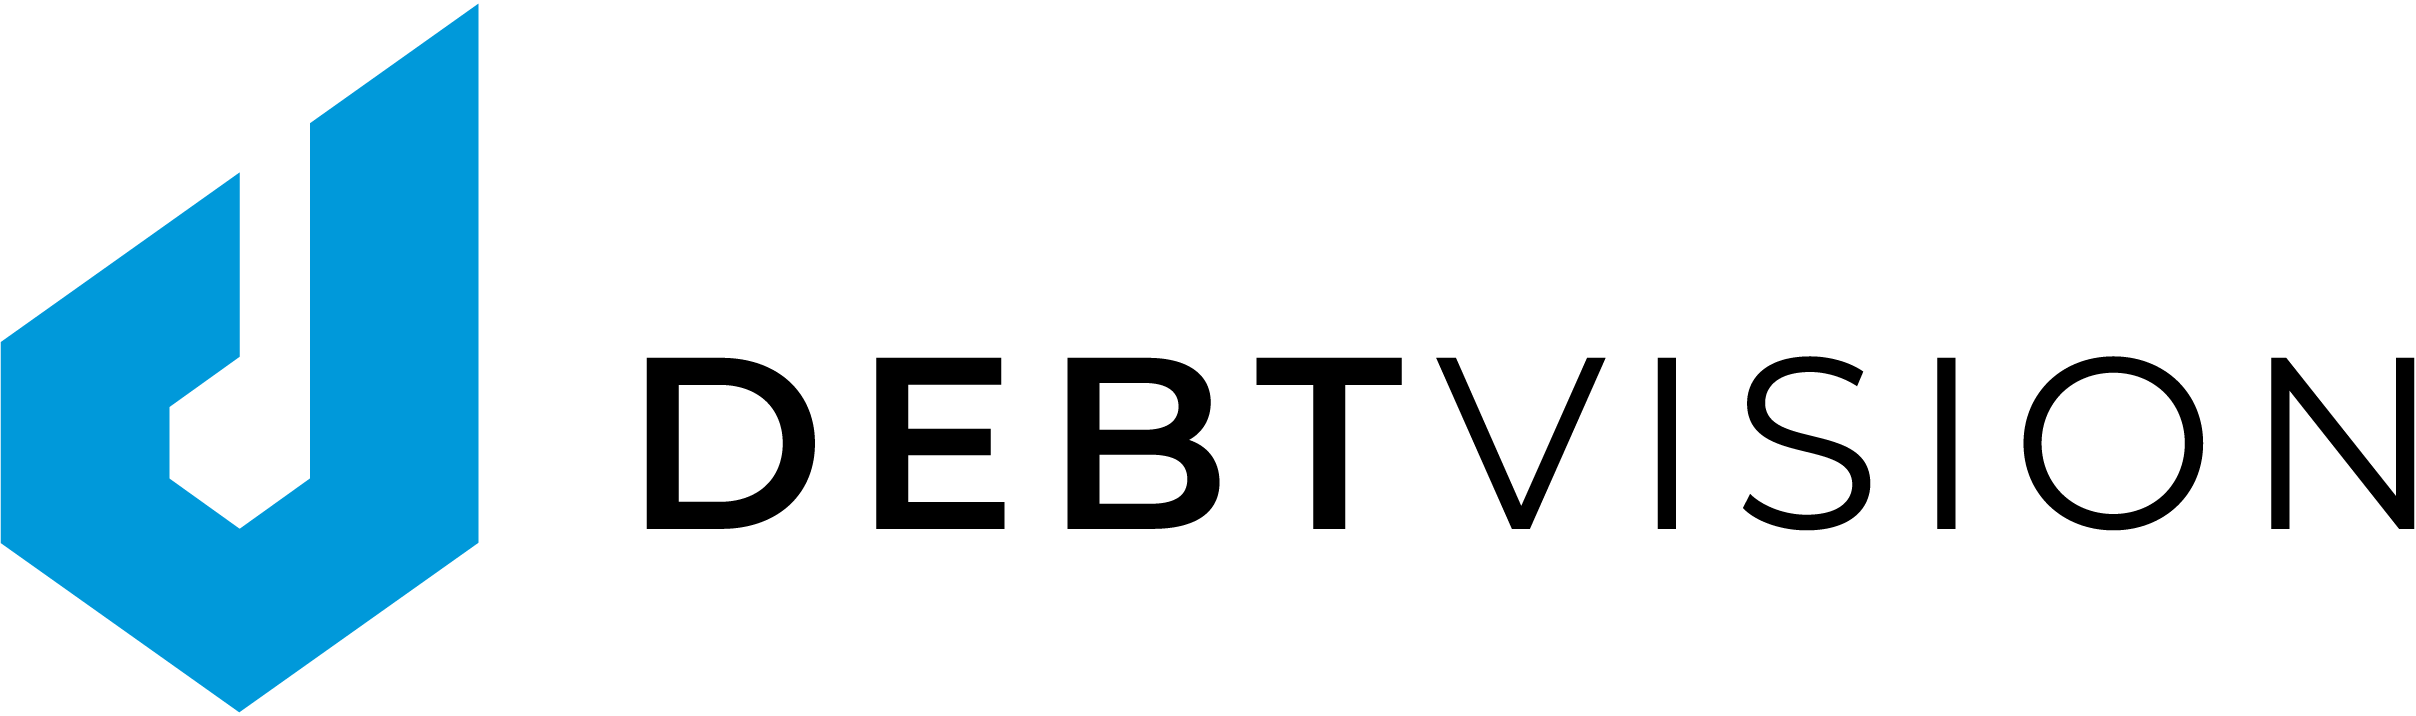 Logo Publsiher DEBTVISION in 2018 erfolgreich am Markt